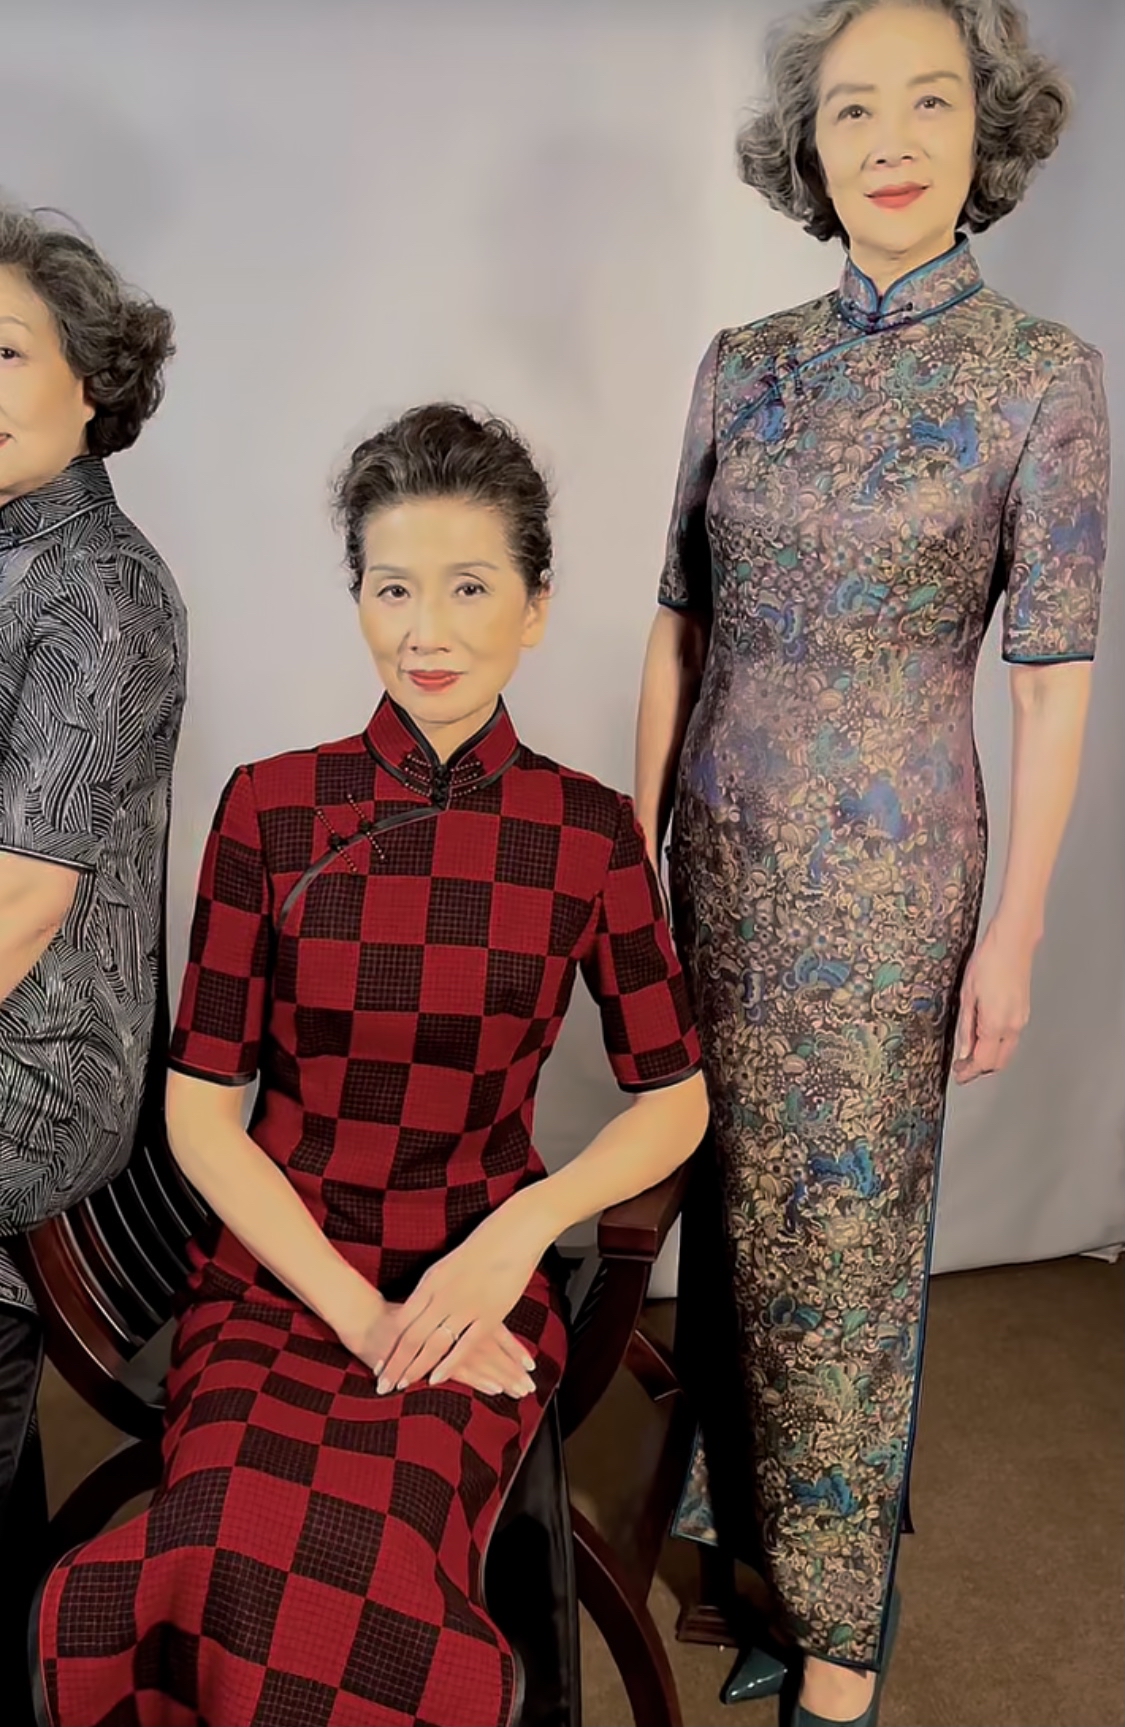 这是我见过最优雅的北京奶奶:76岁穿旗袍优雅端庄,不做作有气质